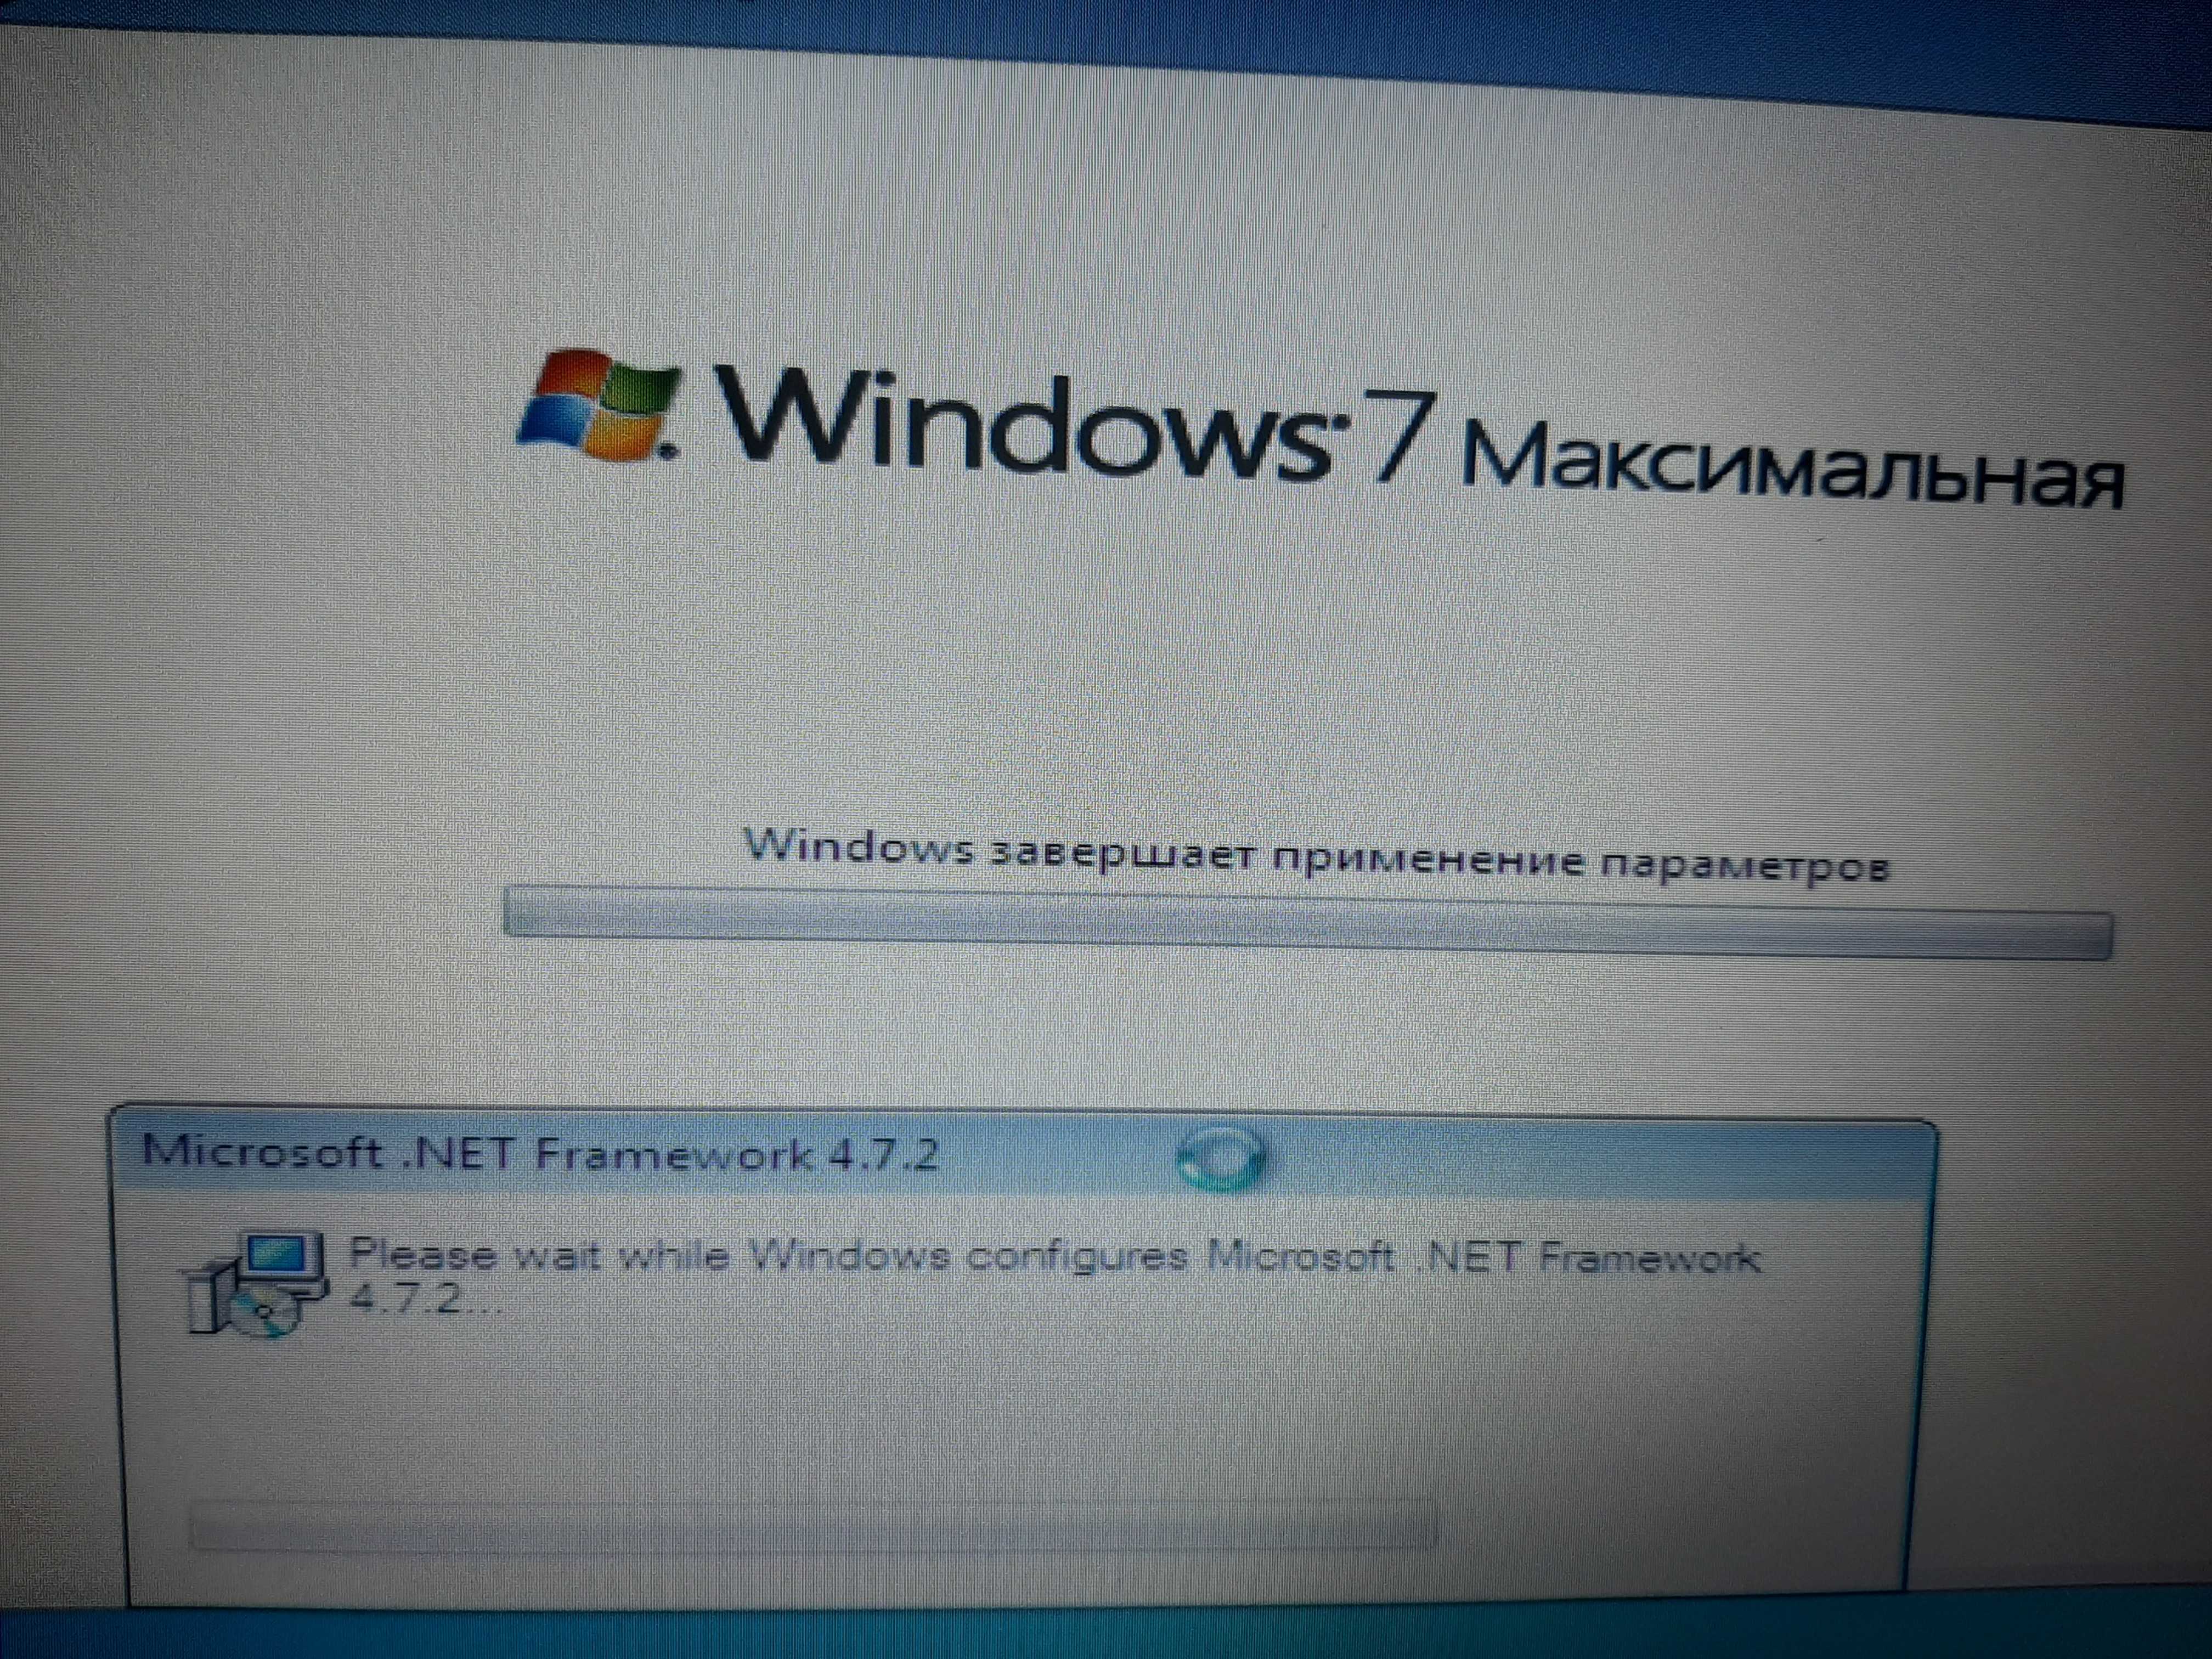 Windows 7 зависает при установке - что делать?